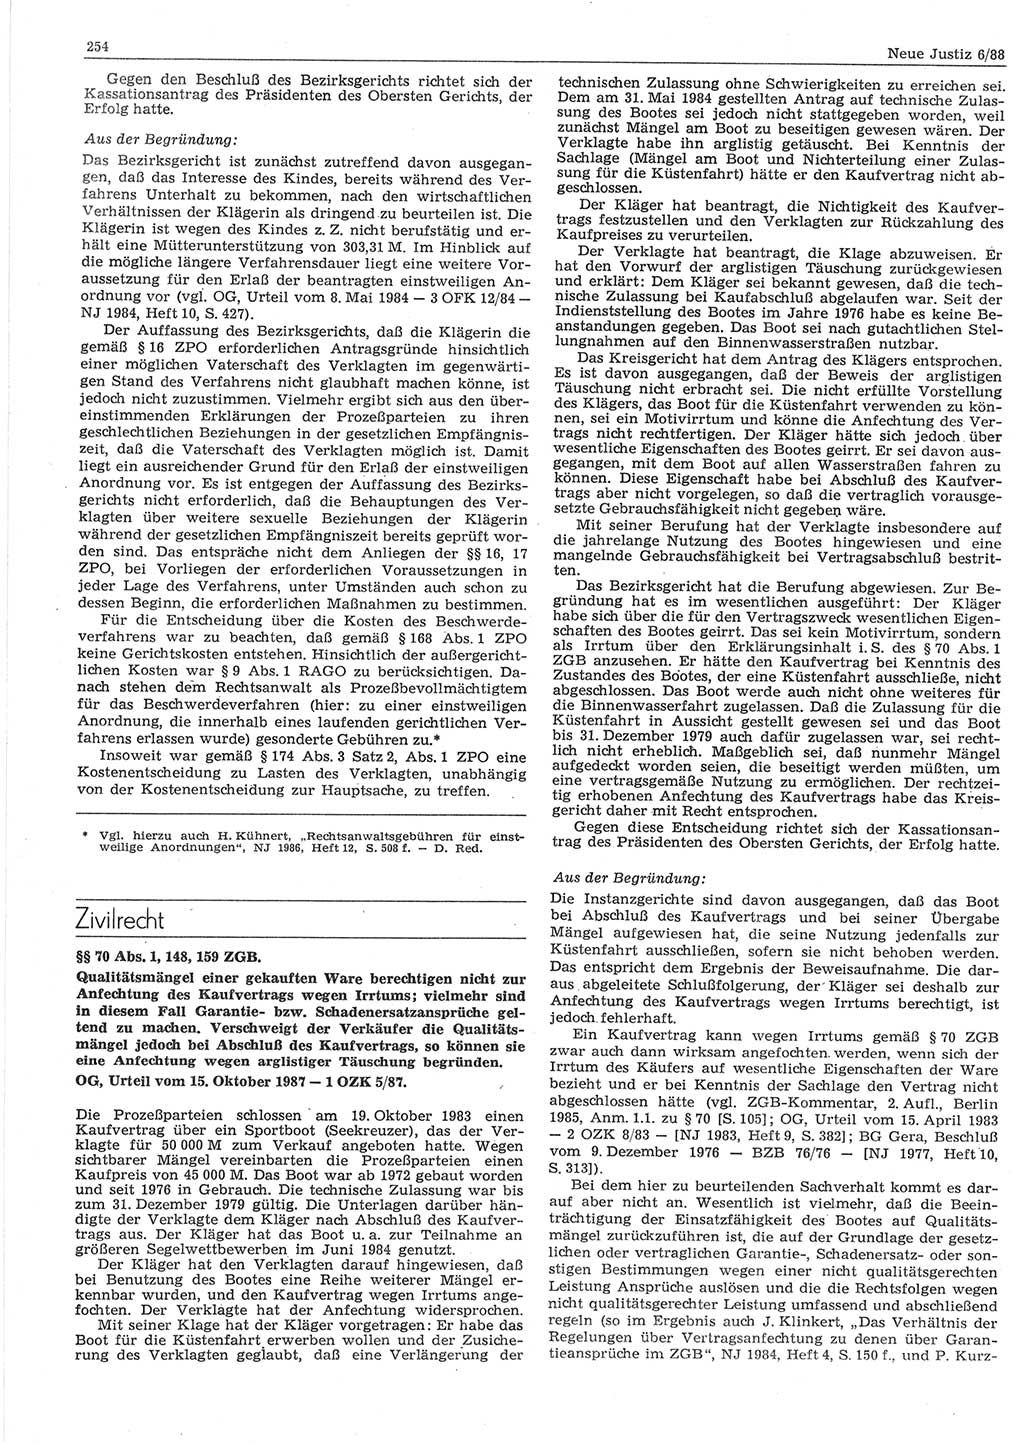 Neue Justiz (NJ), Zeitschrift für sozialistisches Recht und Gesetzlichkeit [Deutsche Demokratische Republik (DDR)], 42. Jahrgang 1988, Seite 254 (NJ DDR 1988, S. 254)